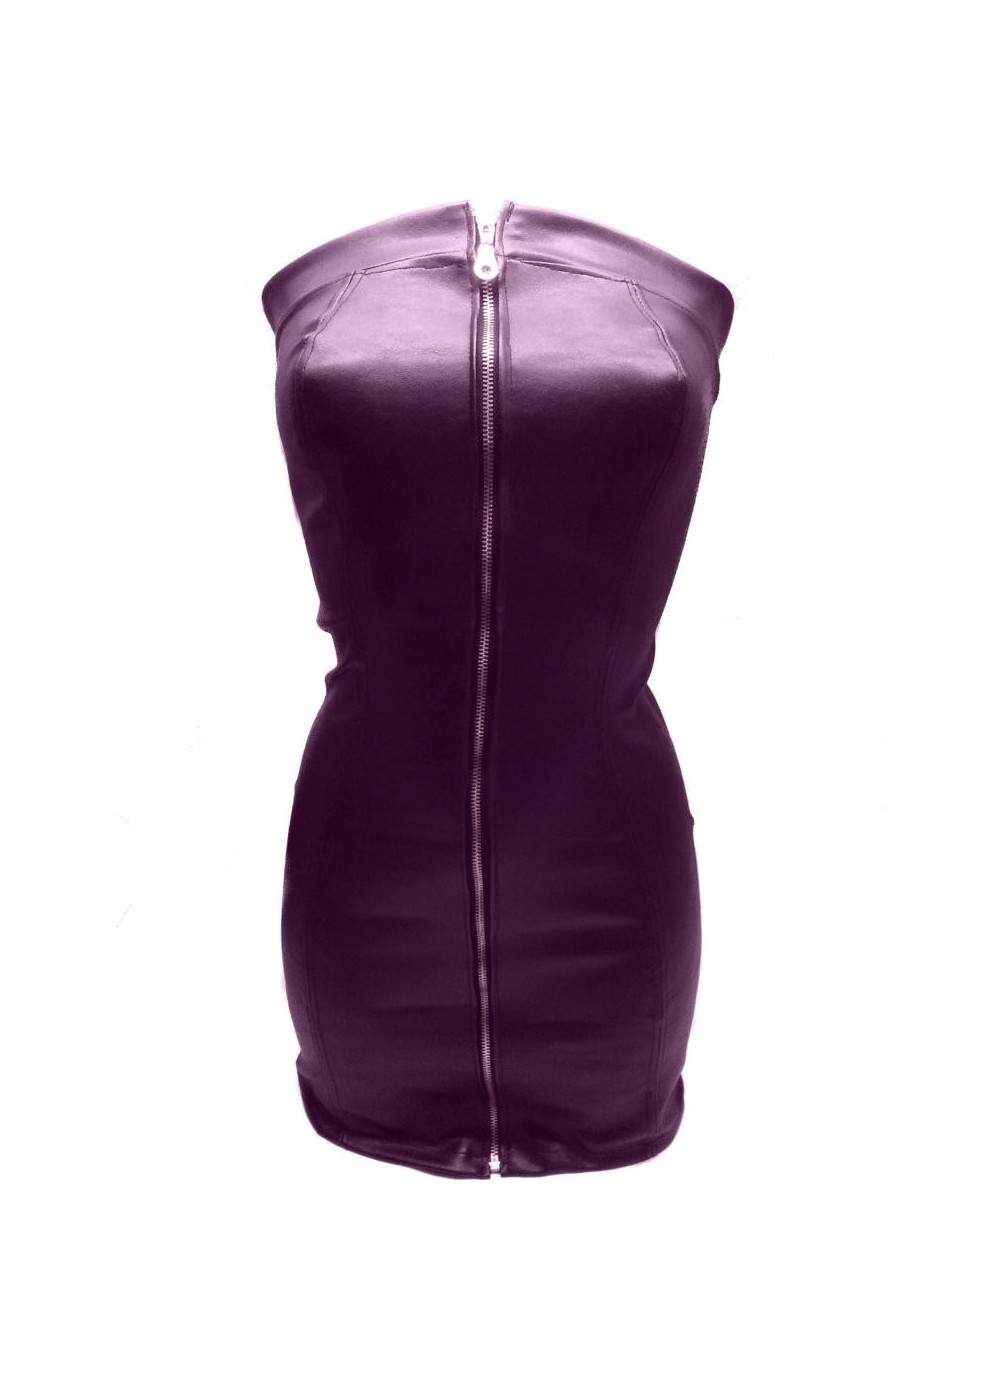 Kauf auf Rechnung Super softes Leder Kleid lila Größen 32 - 46 Spar... - 